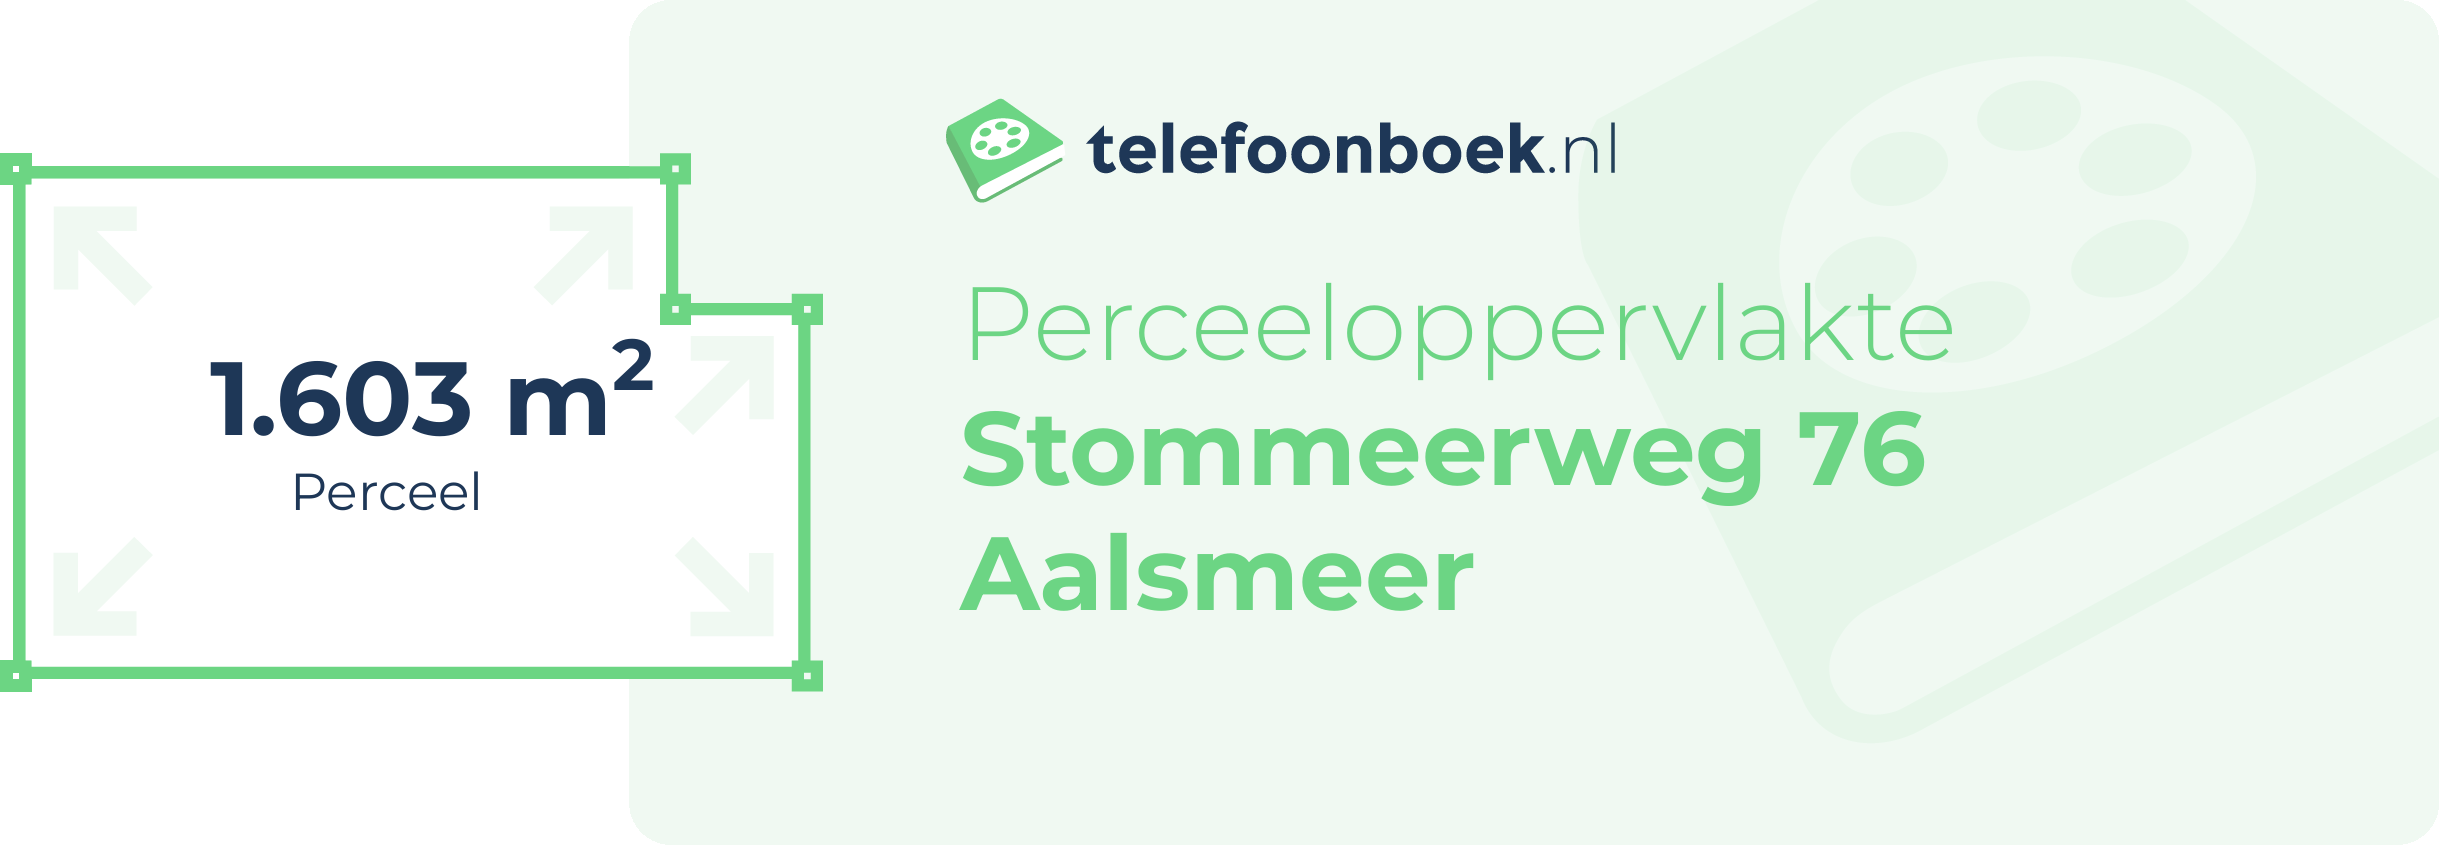 Perceeloppervlakte Stommeerweg 76 Aalsmeer